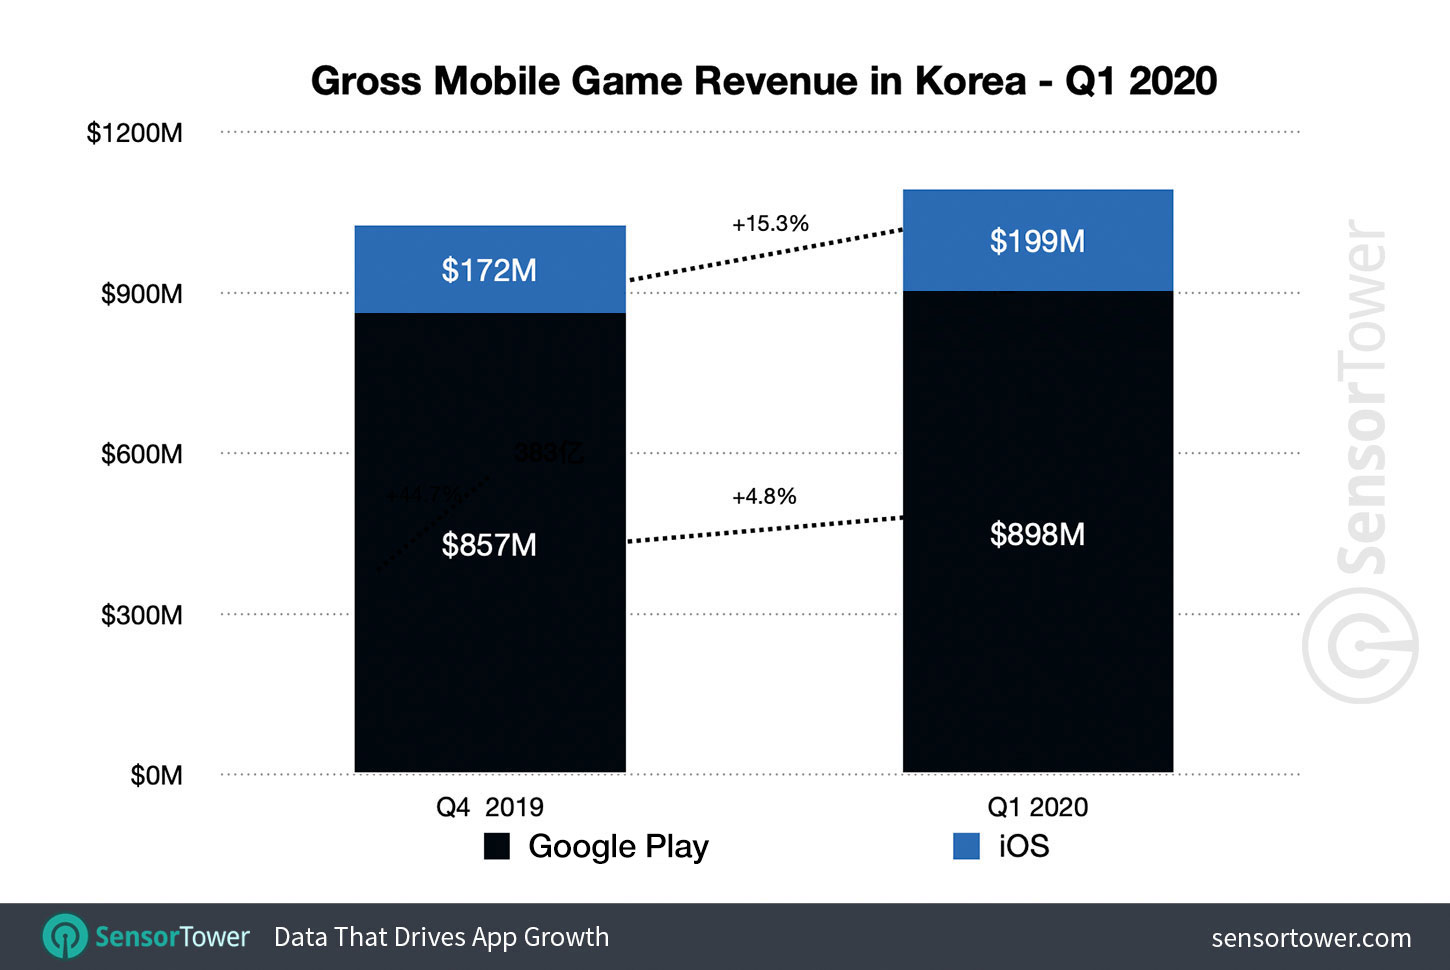 South Korea Mobile Game Revenue for Q1 2020